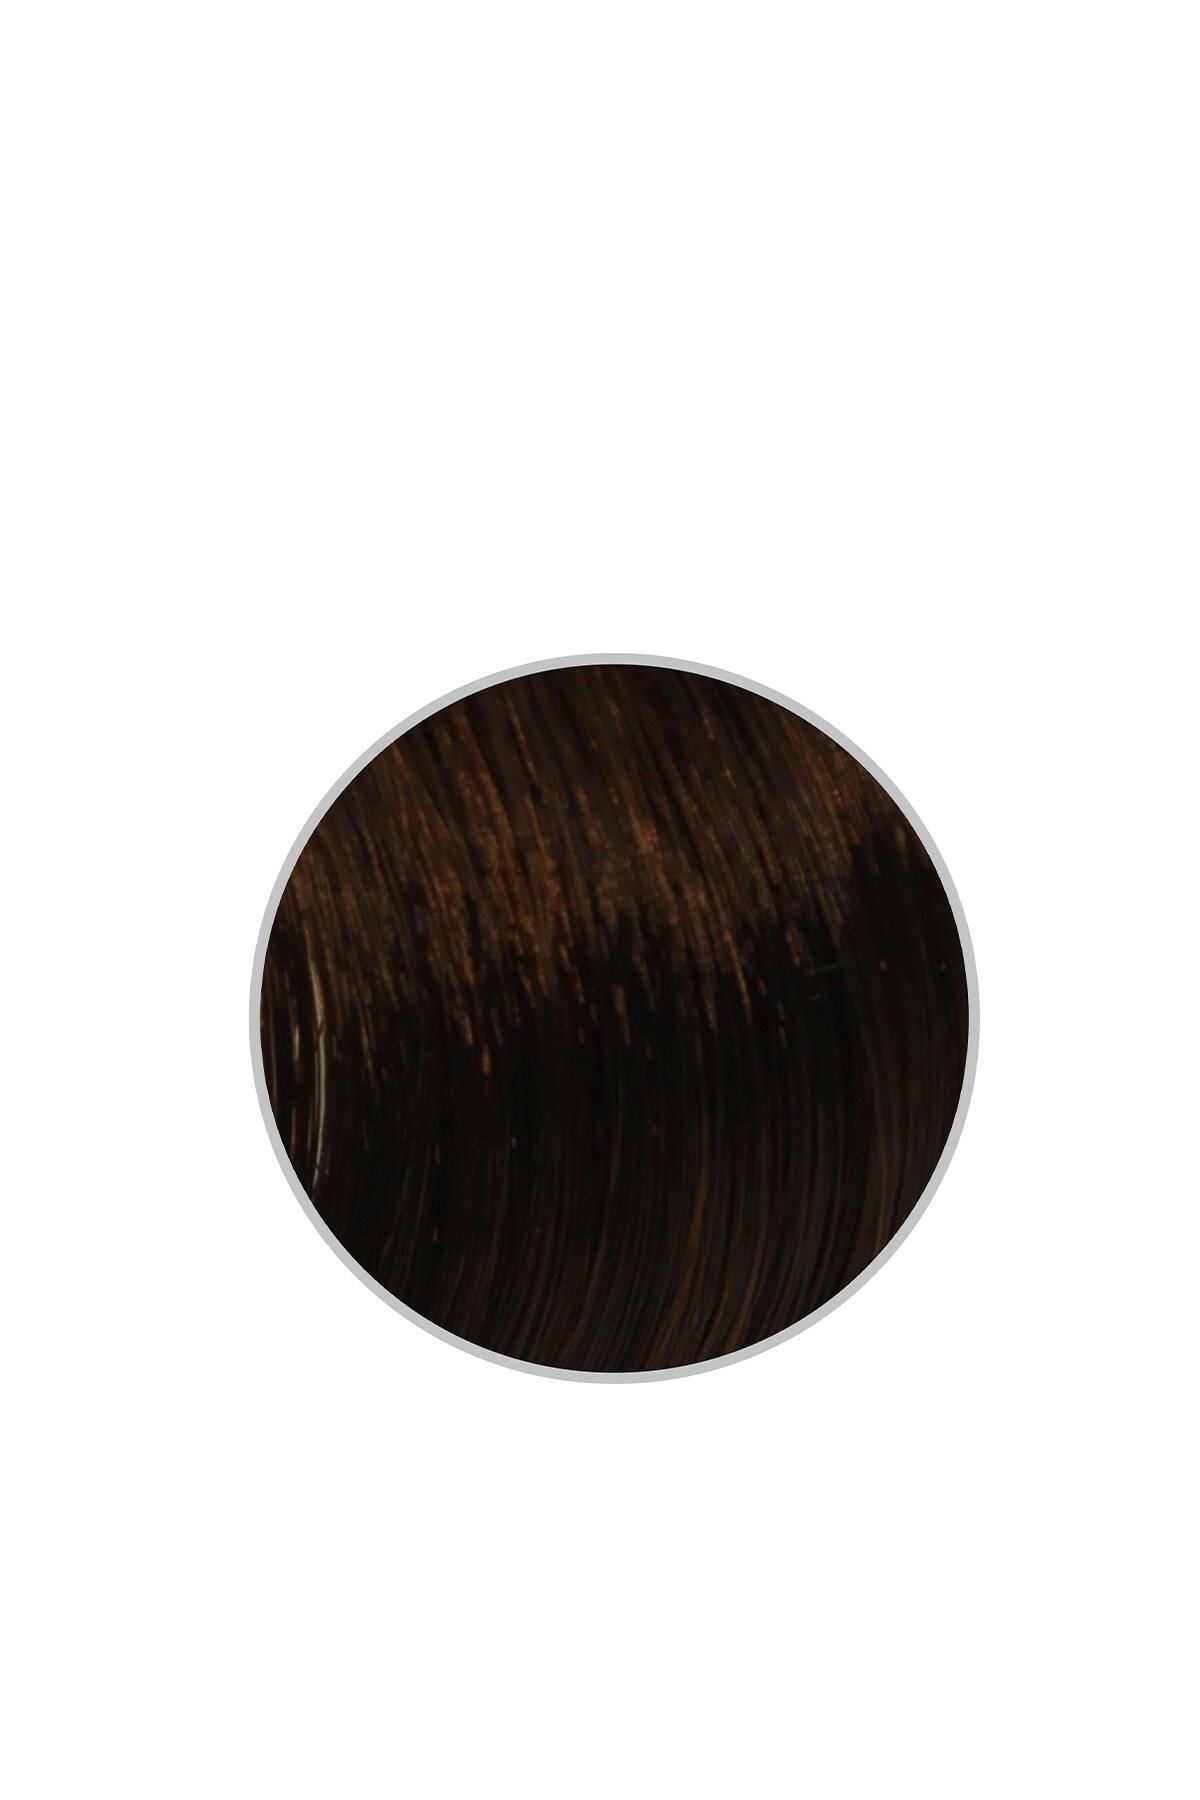 Artego Saç Boyası 150ml | No - 3.7 Koyu Çikolata Kahve